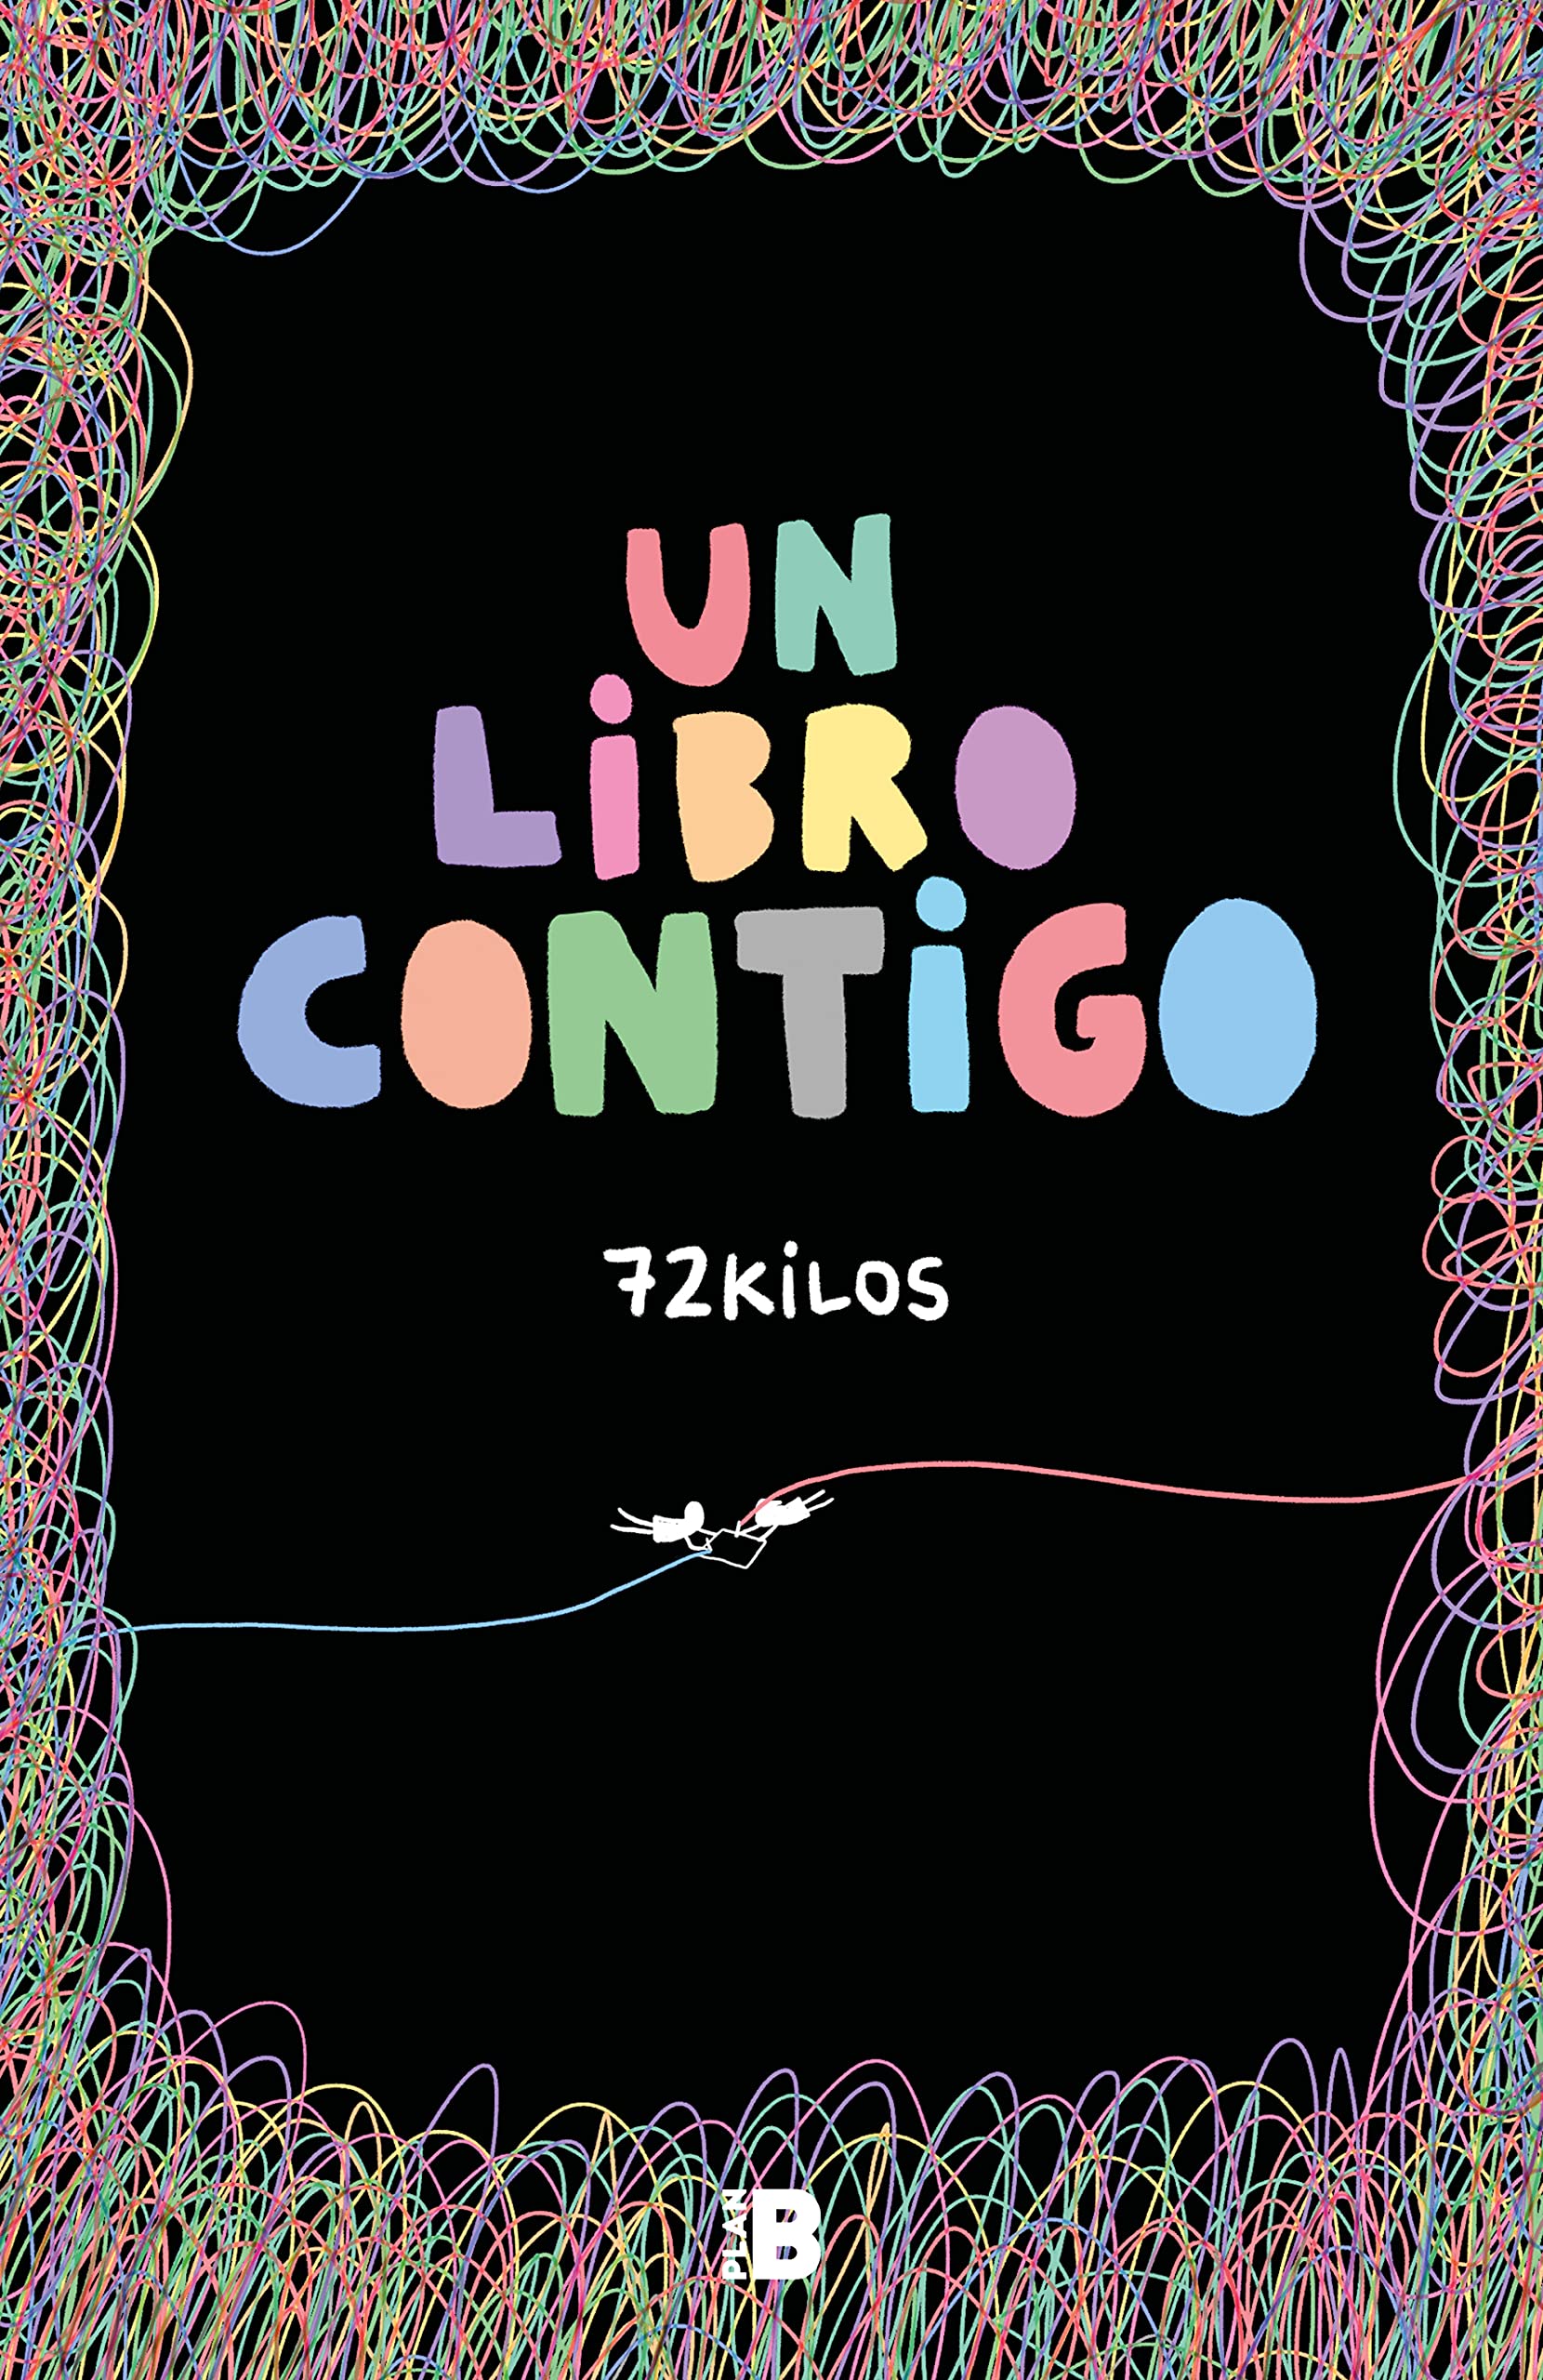 Un libro contigo / A Book with You (Spanish Edition)